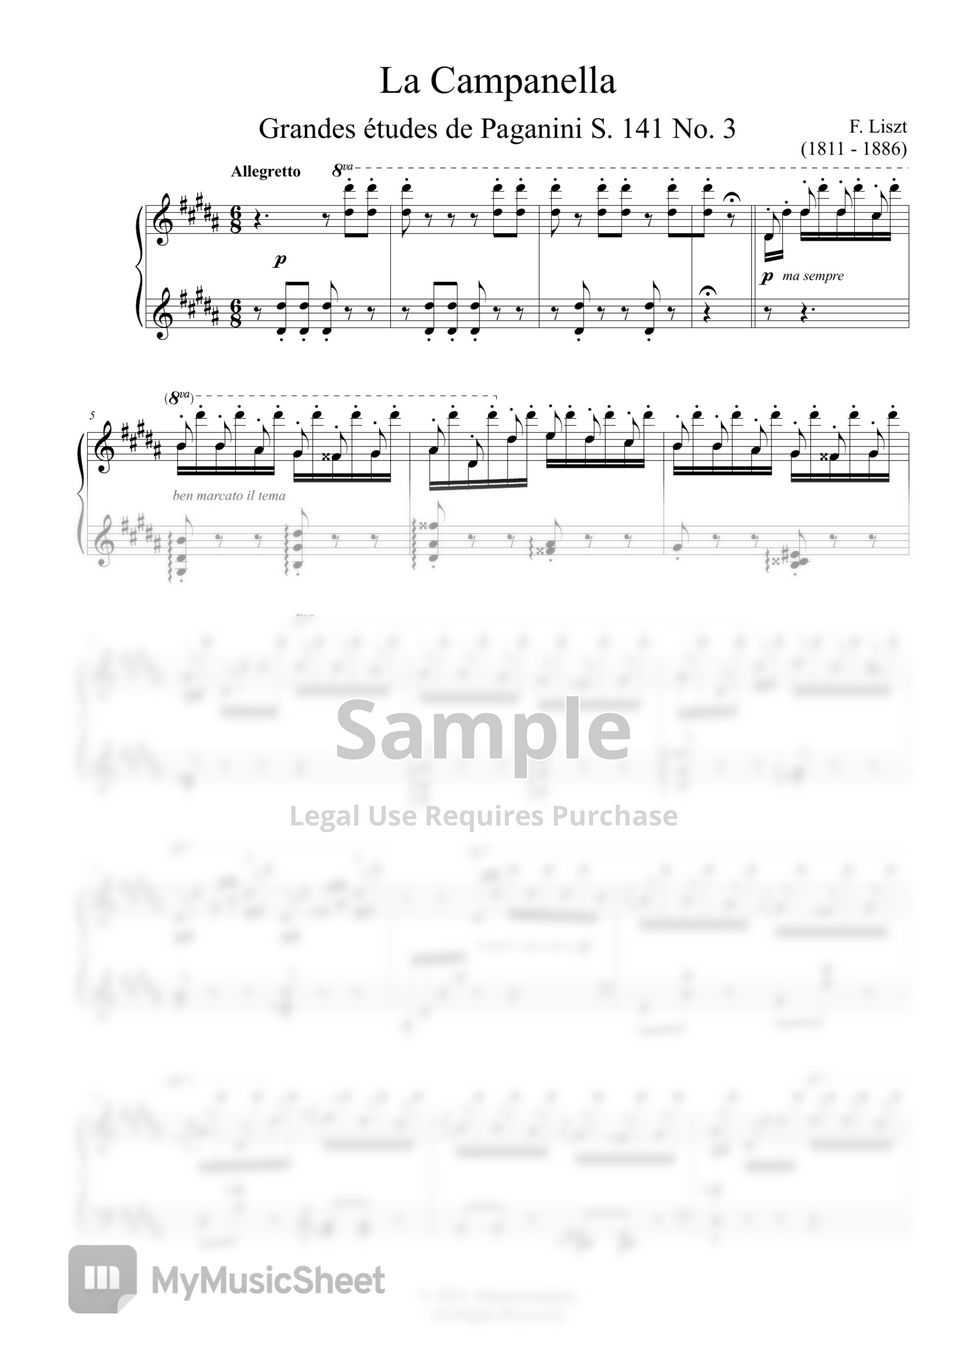 F. Liszt - La Campanella by MyMusicSheet Official